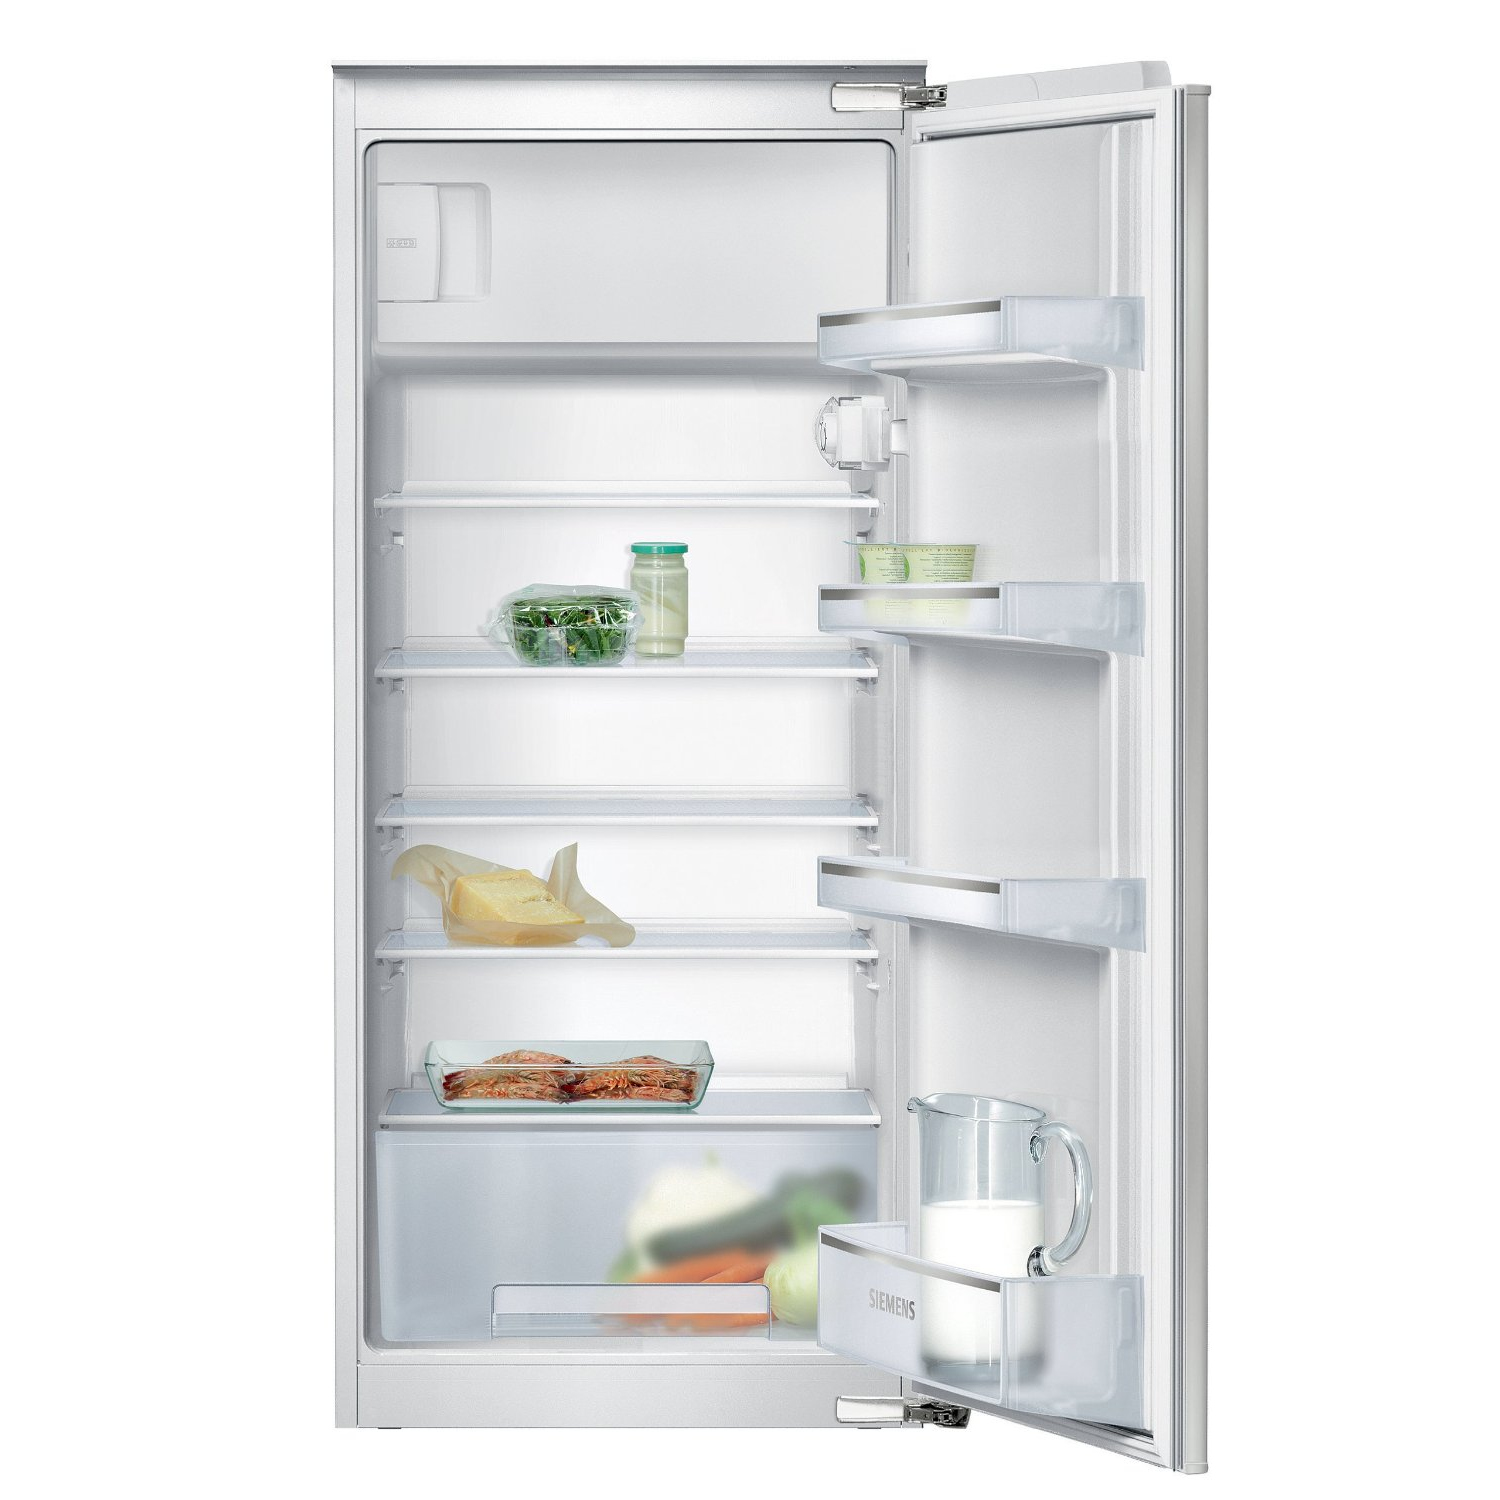 Siemens KI24LV60 A++ Einbau Kühlschrank mit Gefrierfach | eBay